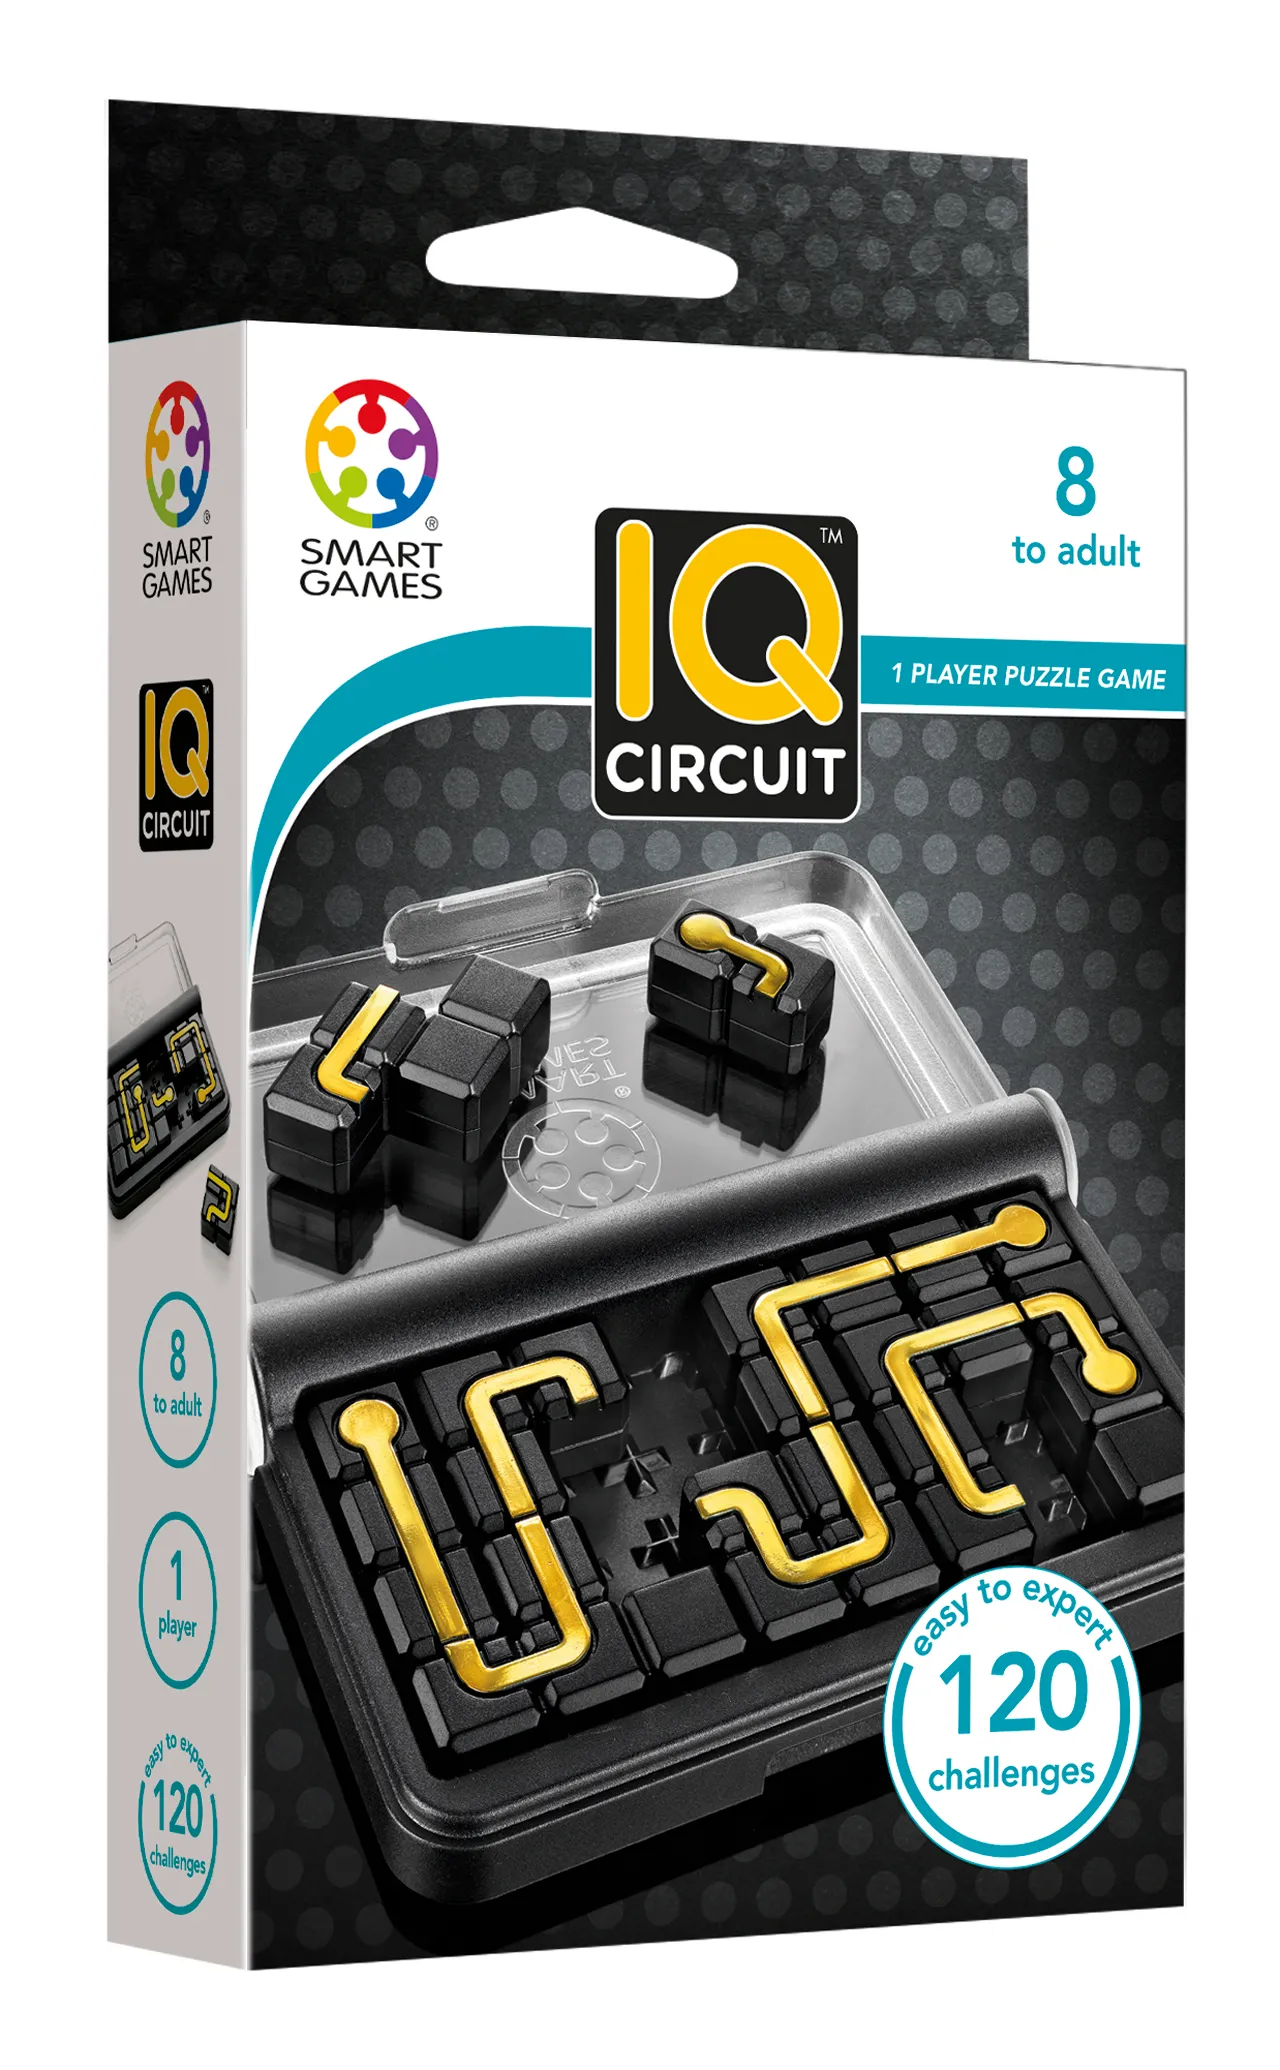 Joc - IQ Circuit | Smart Games image0